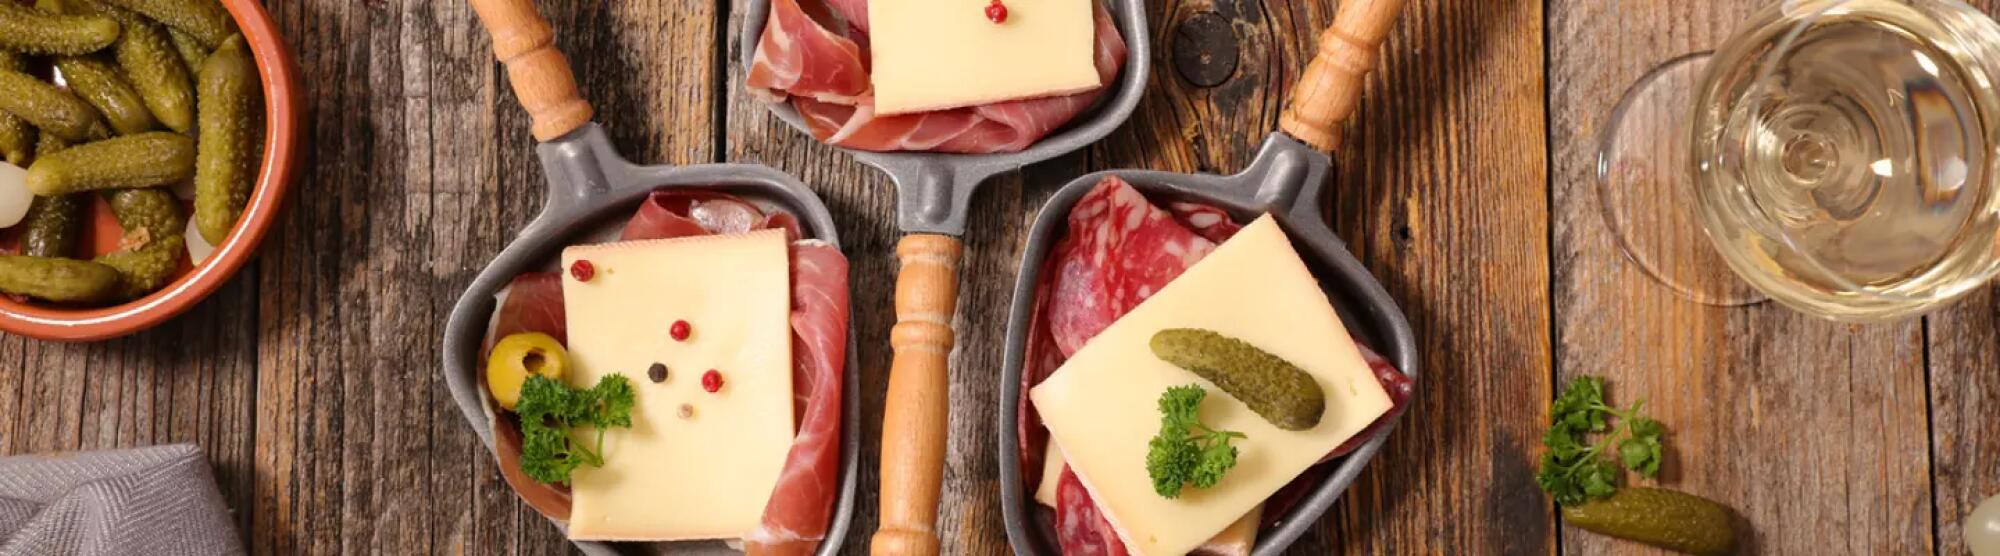 LA02_table-avec-fromage-raclette-charcuterie